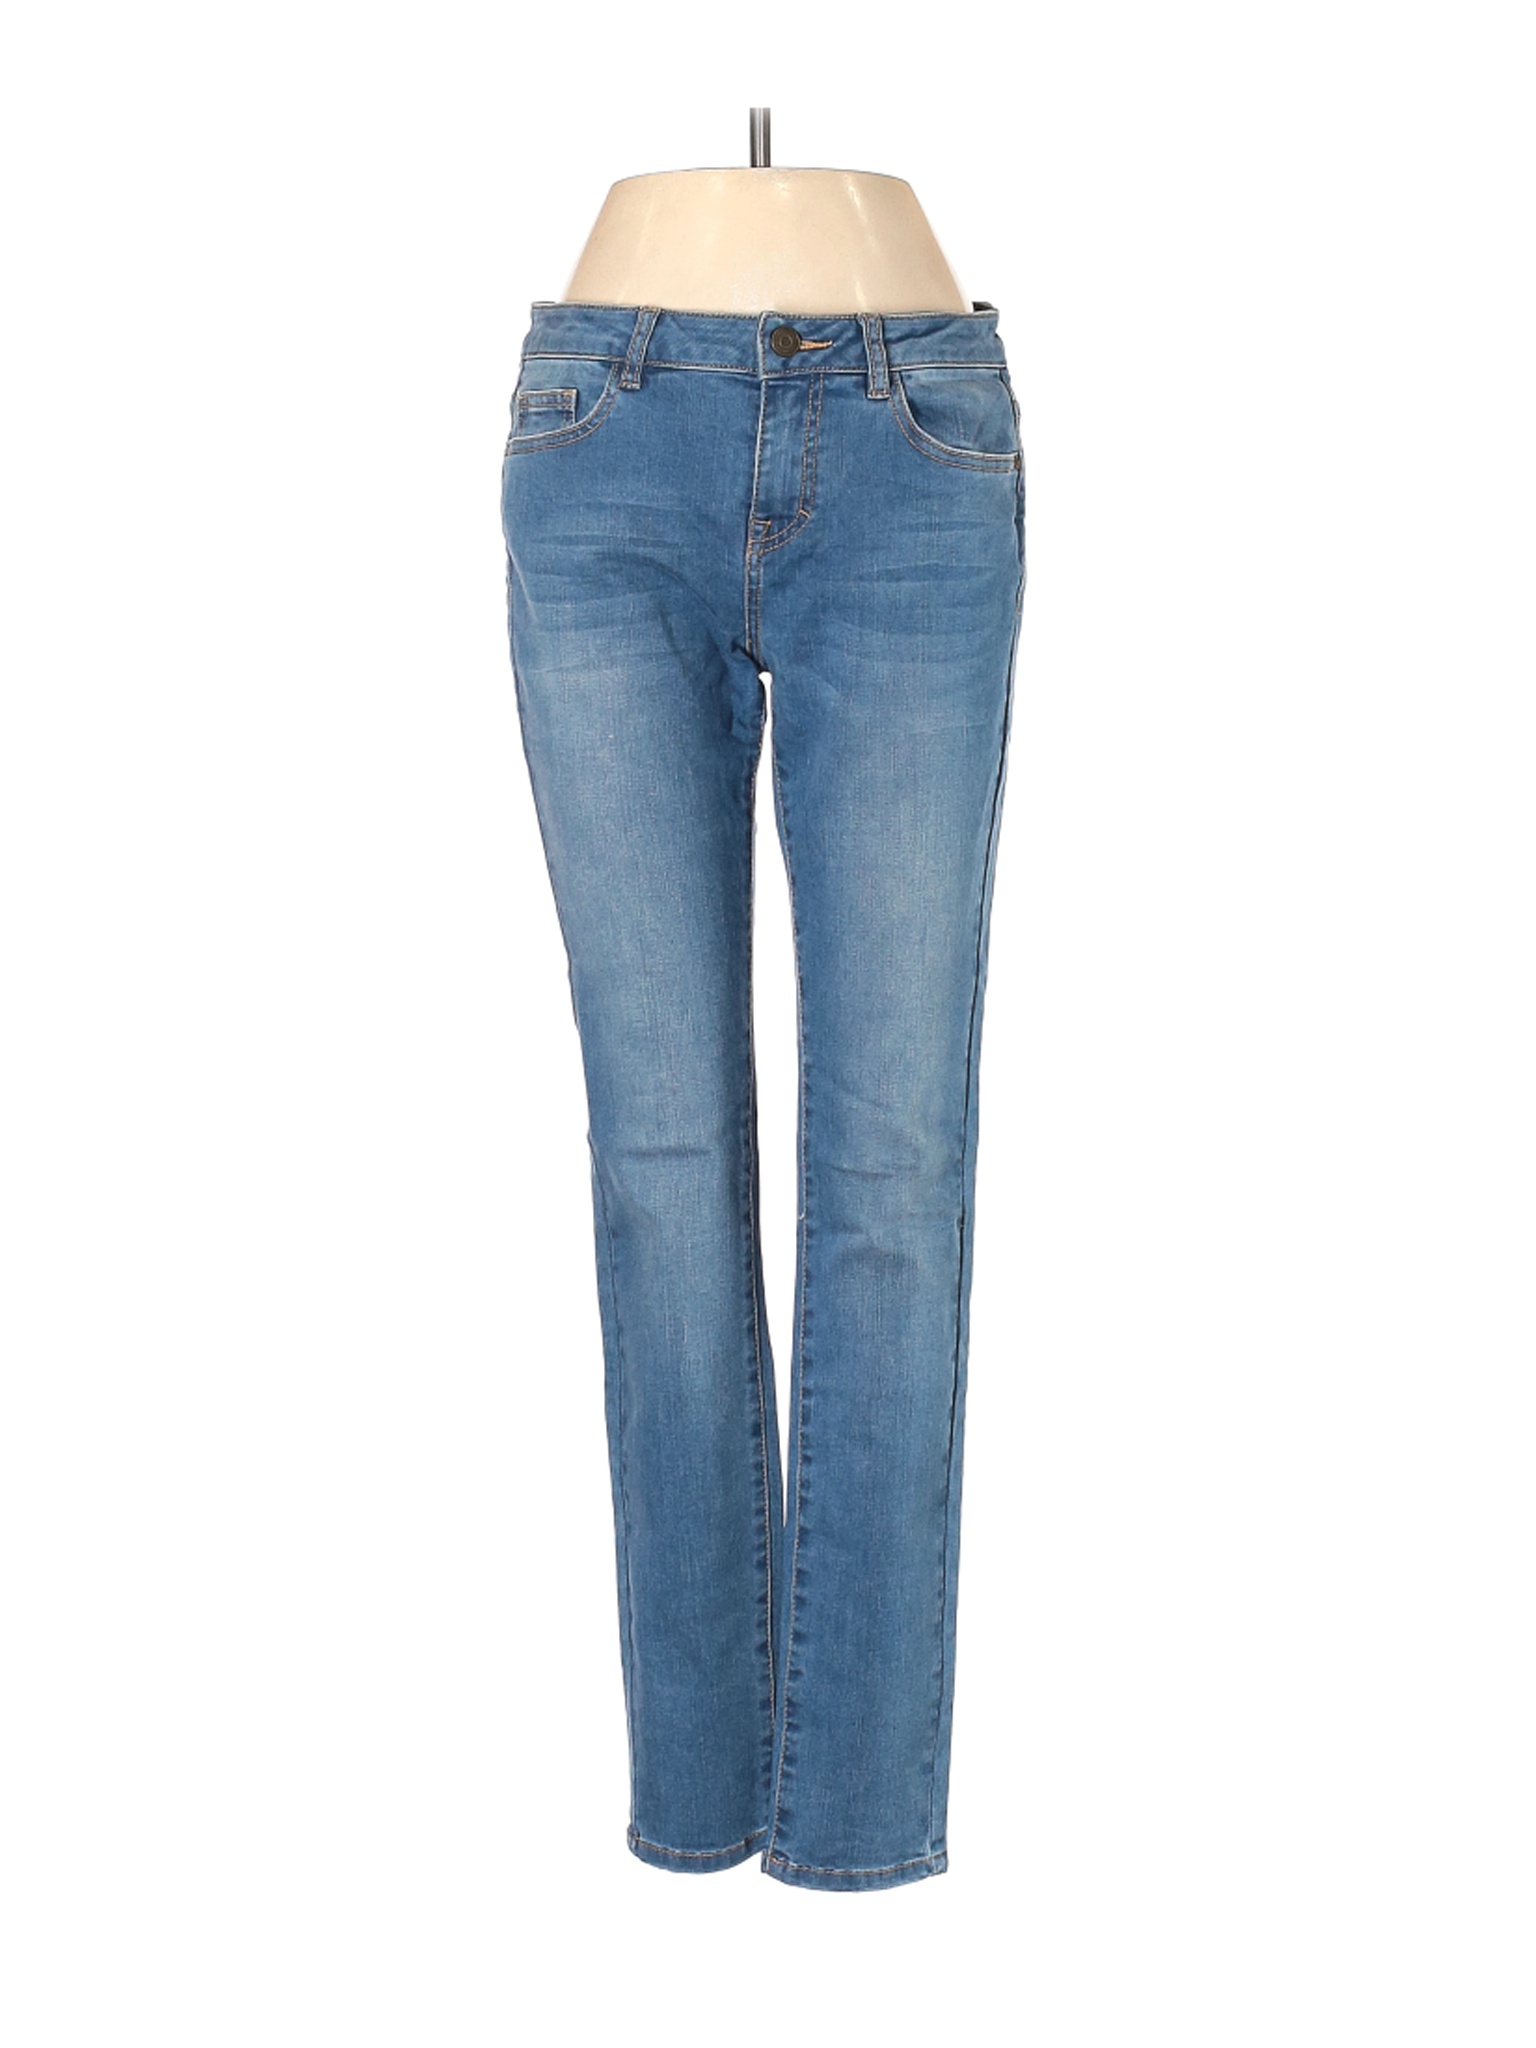 Assorted Brands Women Blue Jeans 27W | eBay